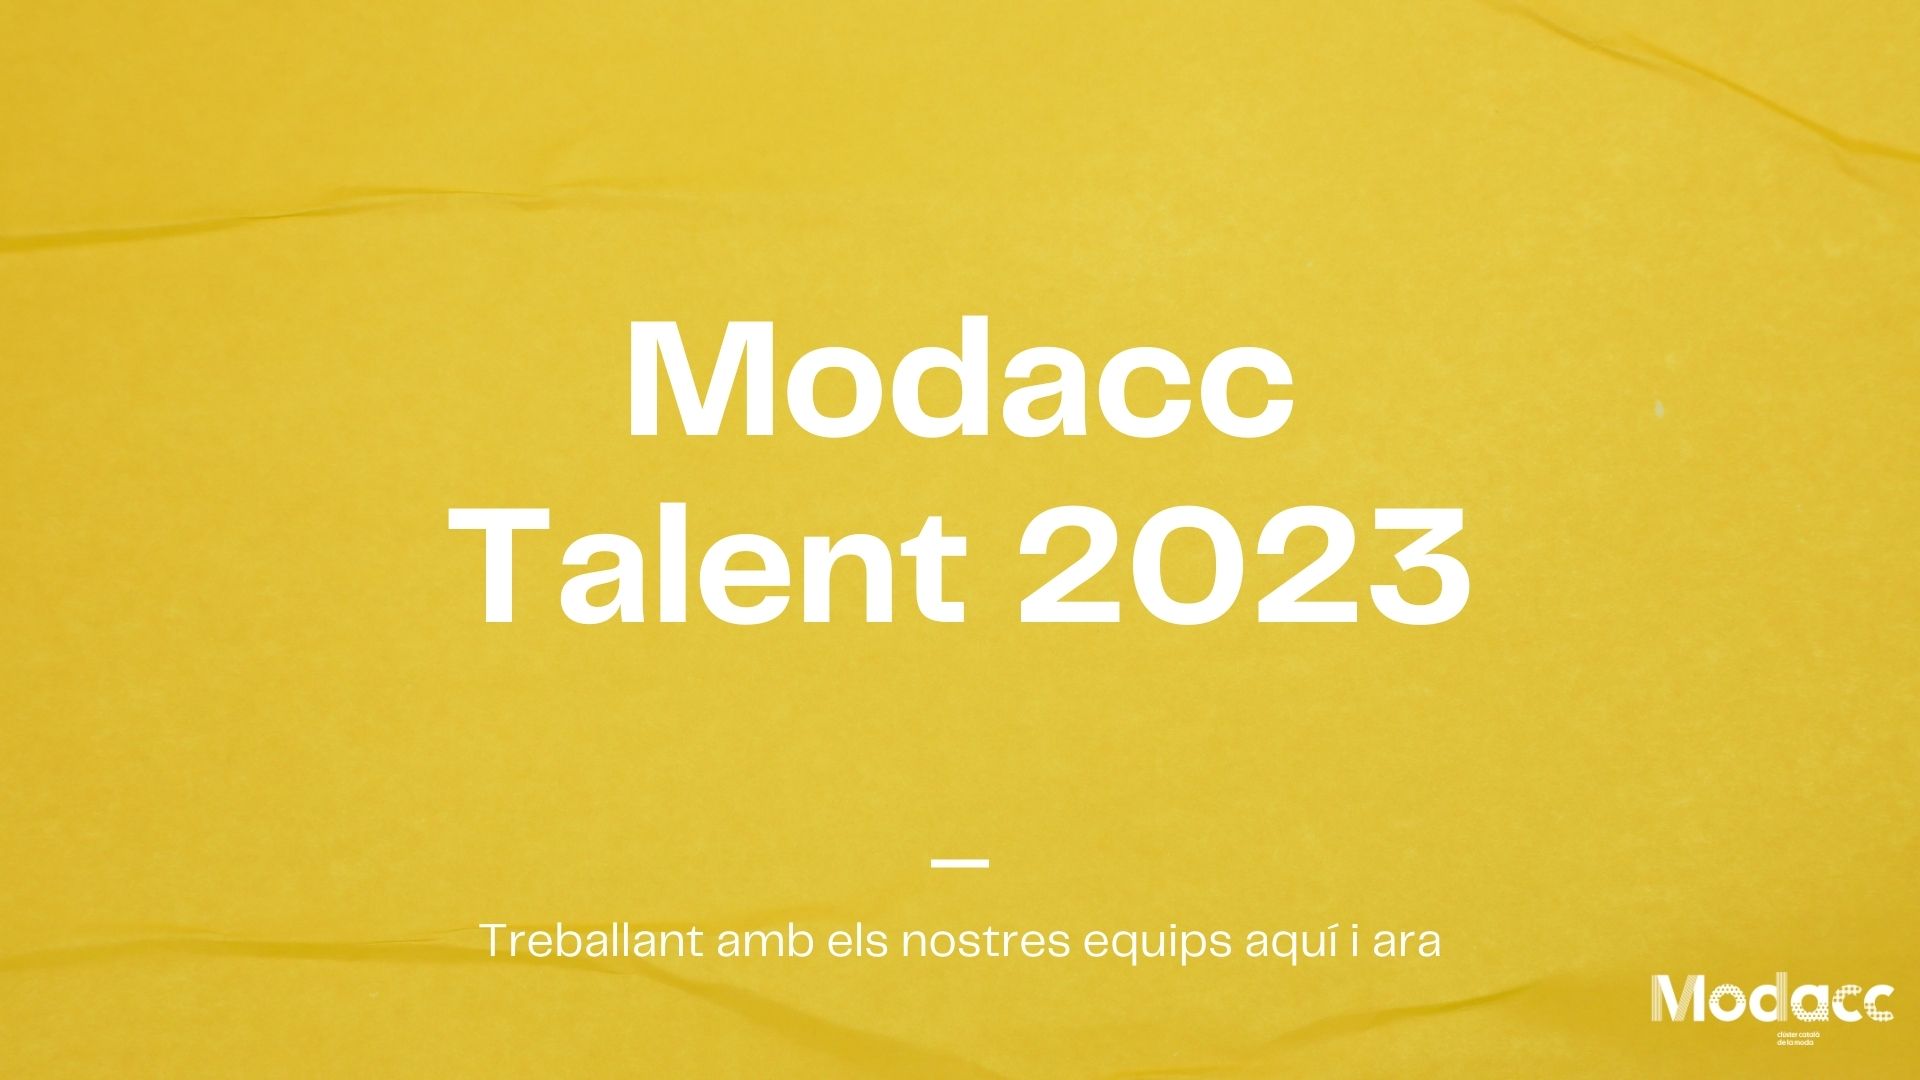 El Clúster Catalán de la Moda (Modacc) organiza el Modacc Talent 2023